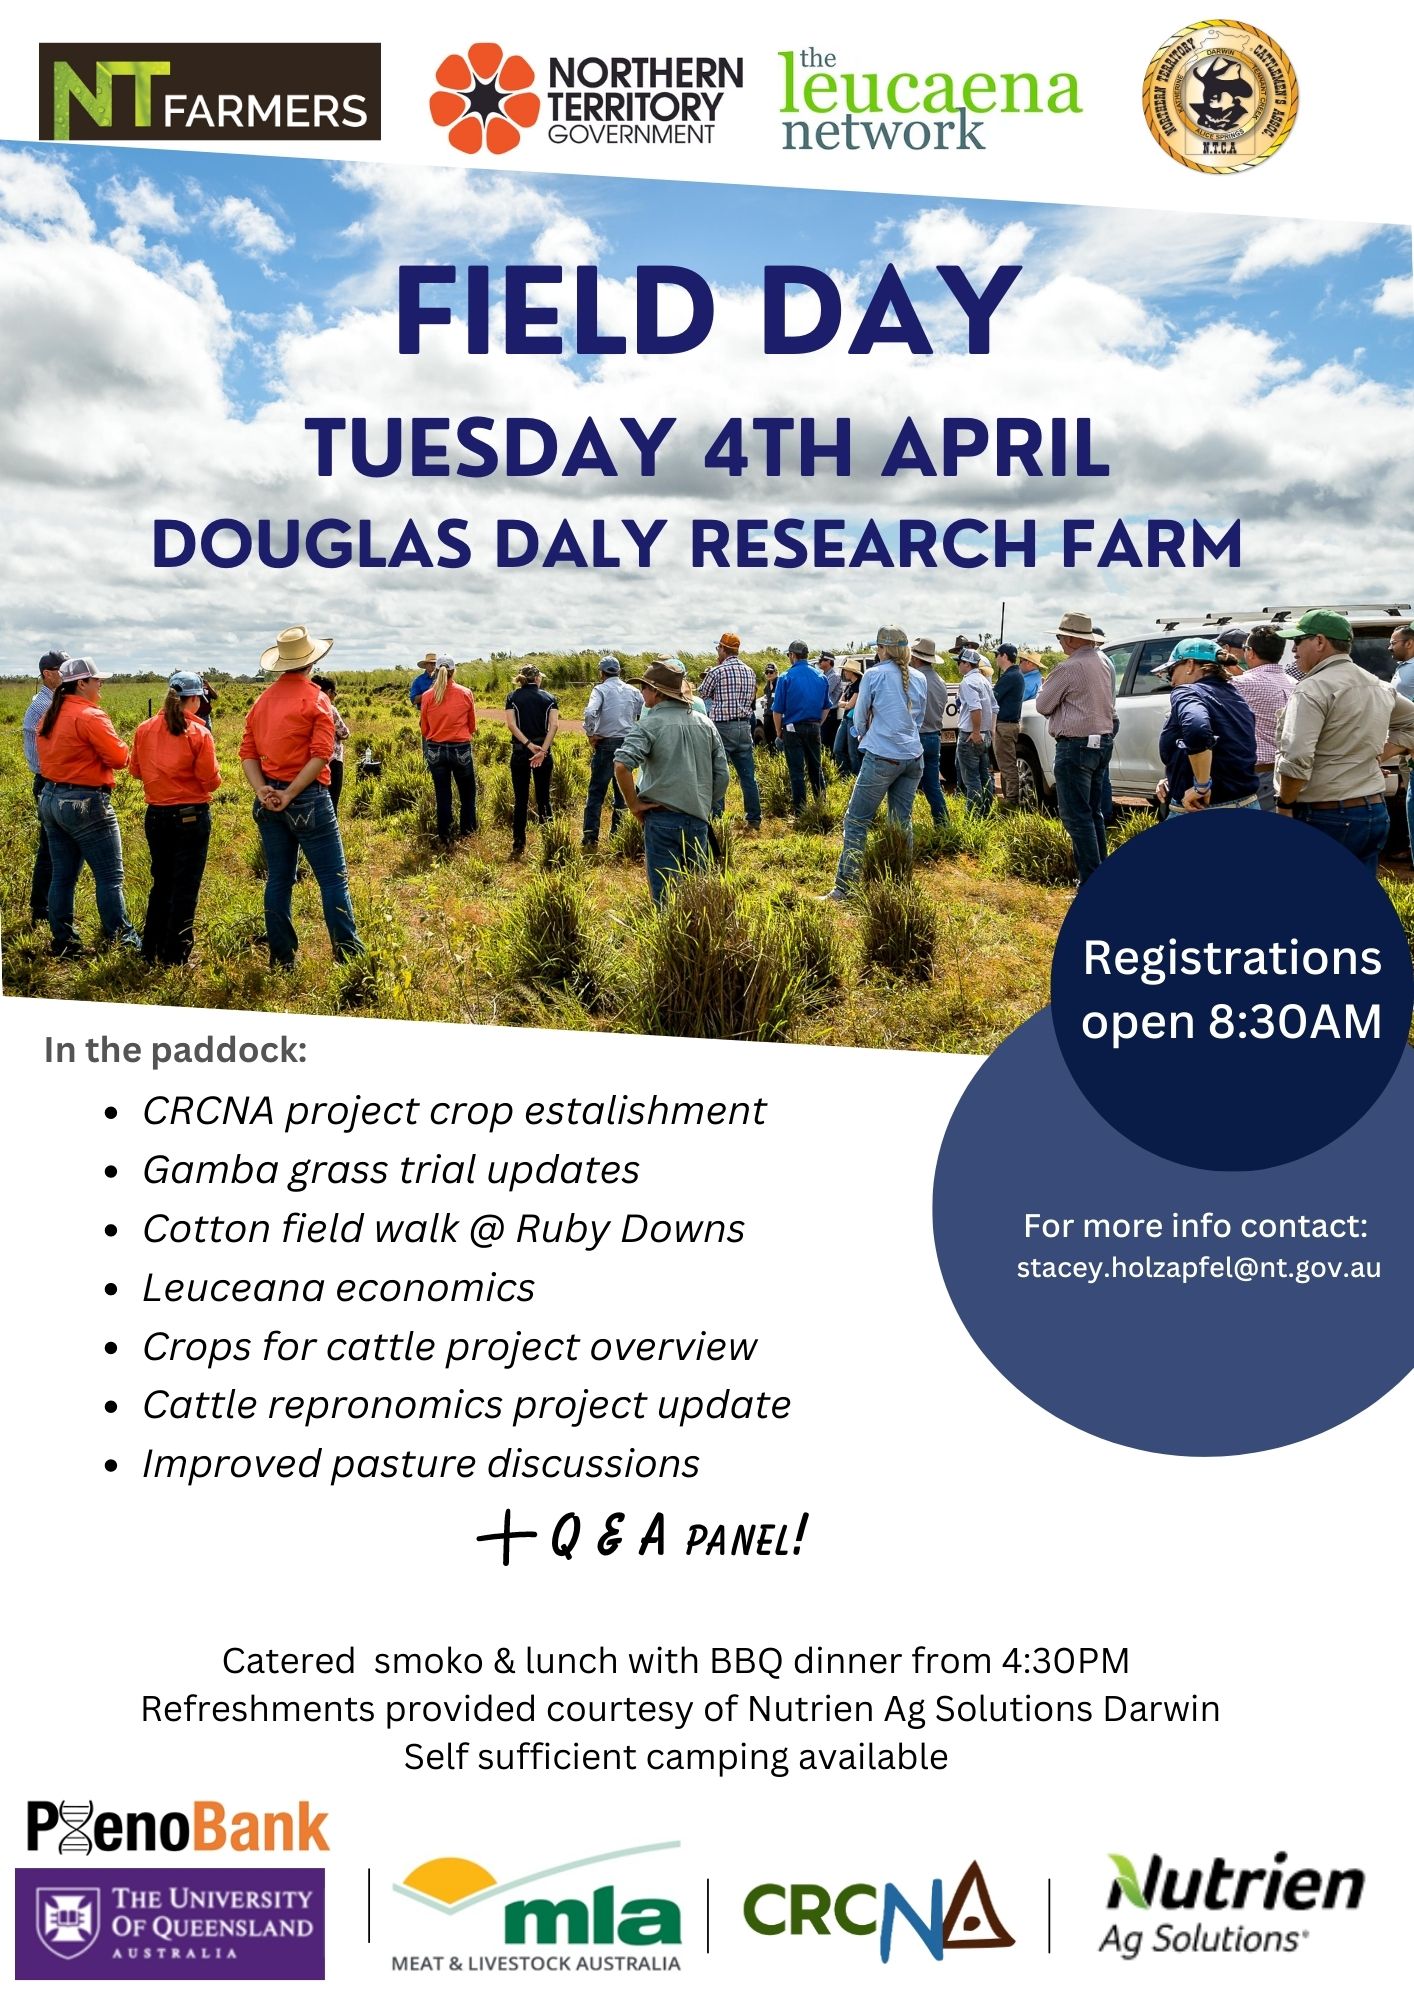 Douglas Daly Research Farm